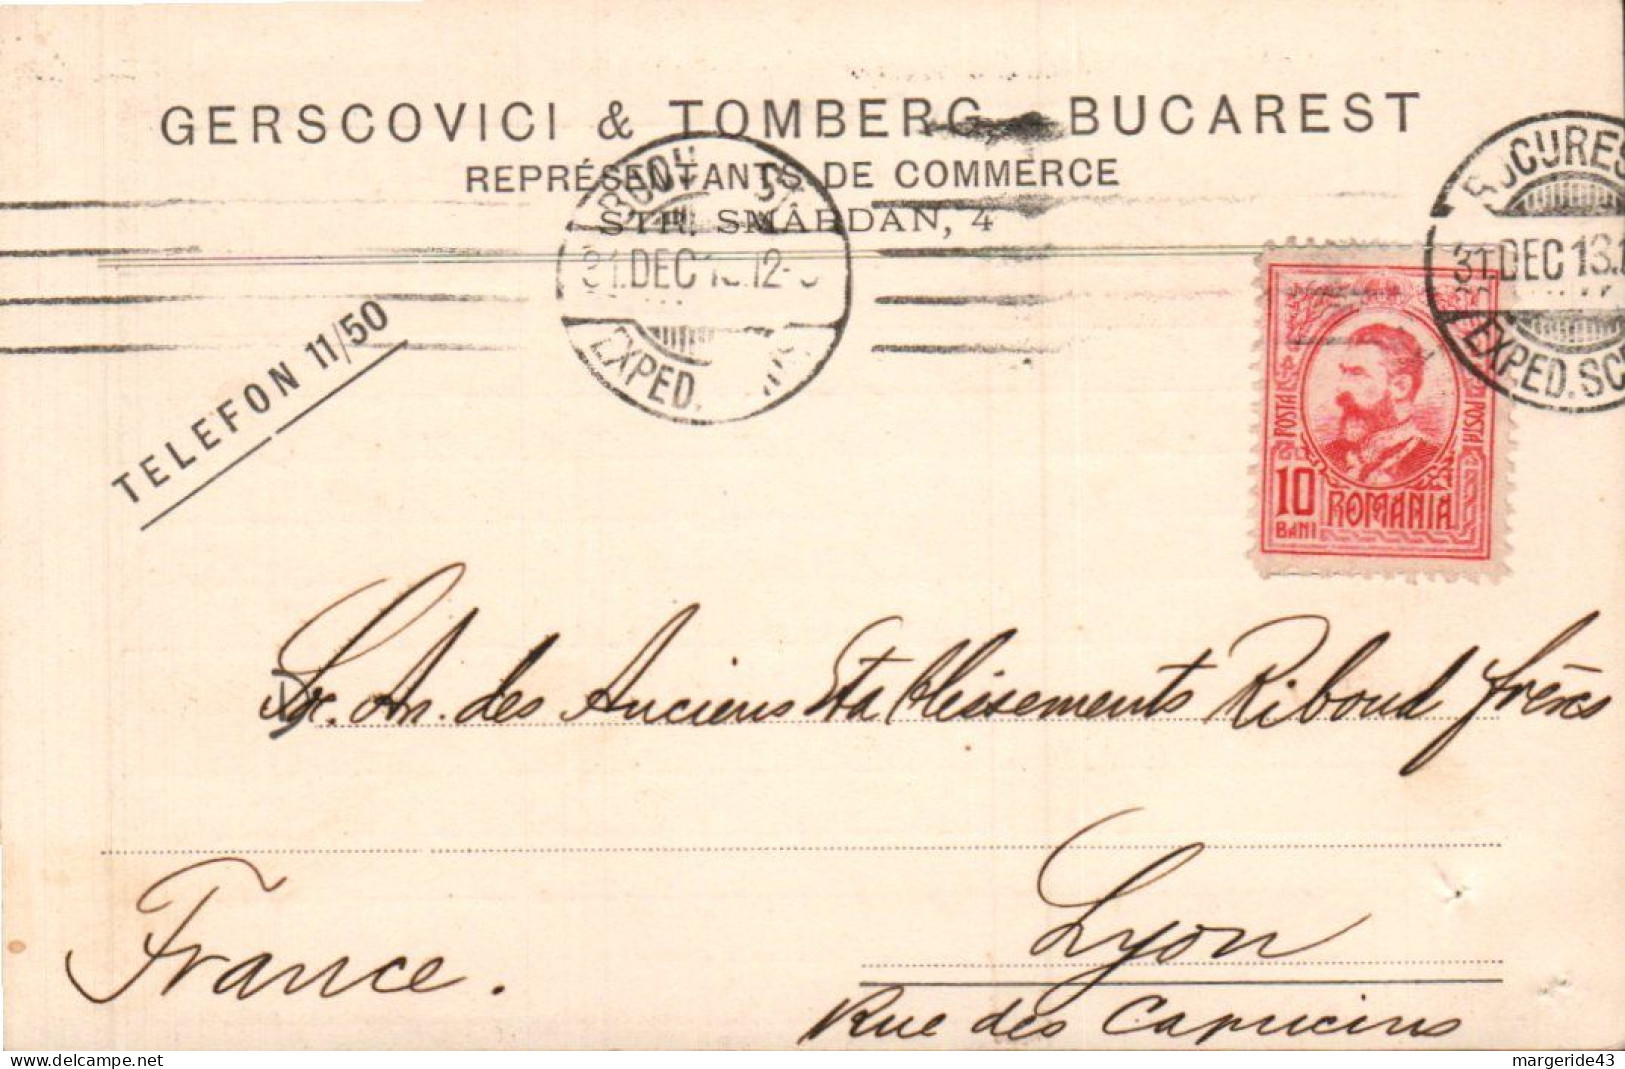 ROUMANIE ROYAUME SEUL SUR CARTE POUR LA FRANCE 1913 - Lettres & Documents